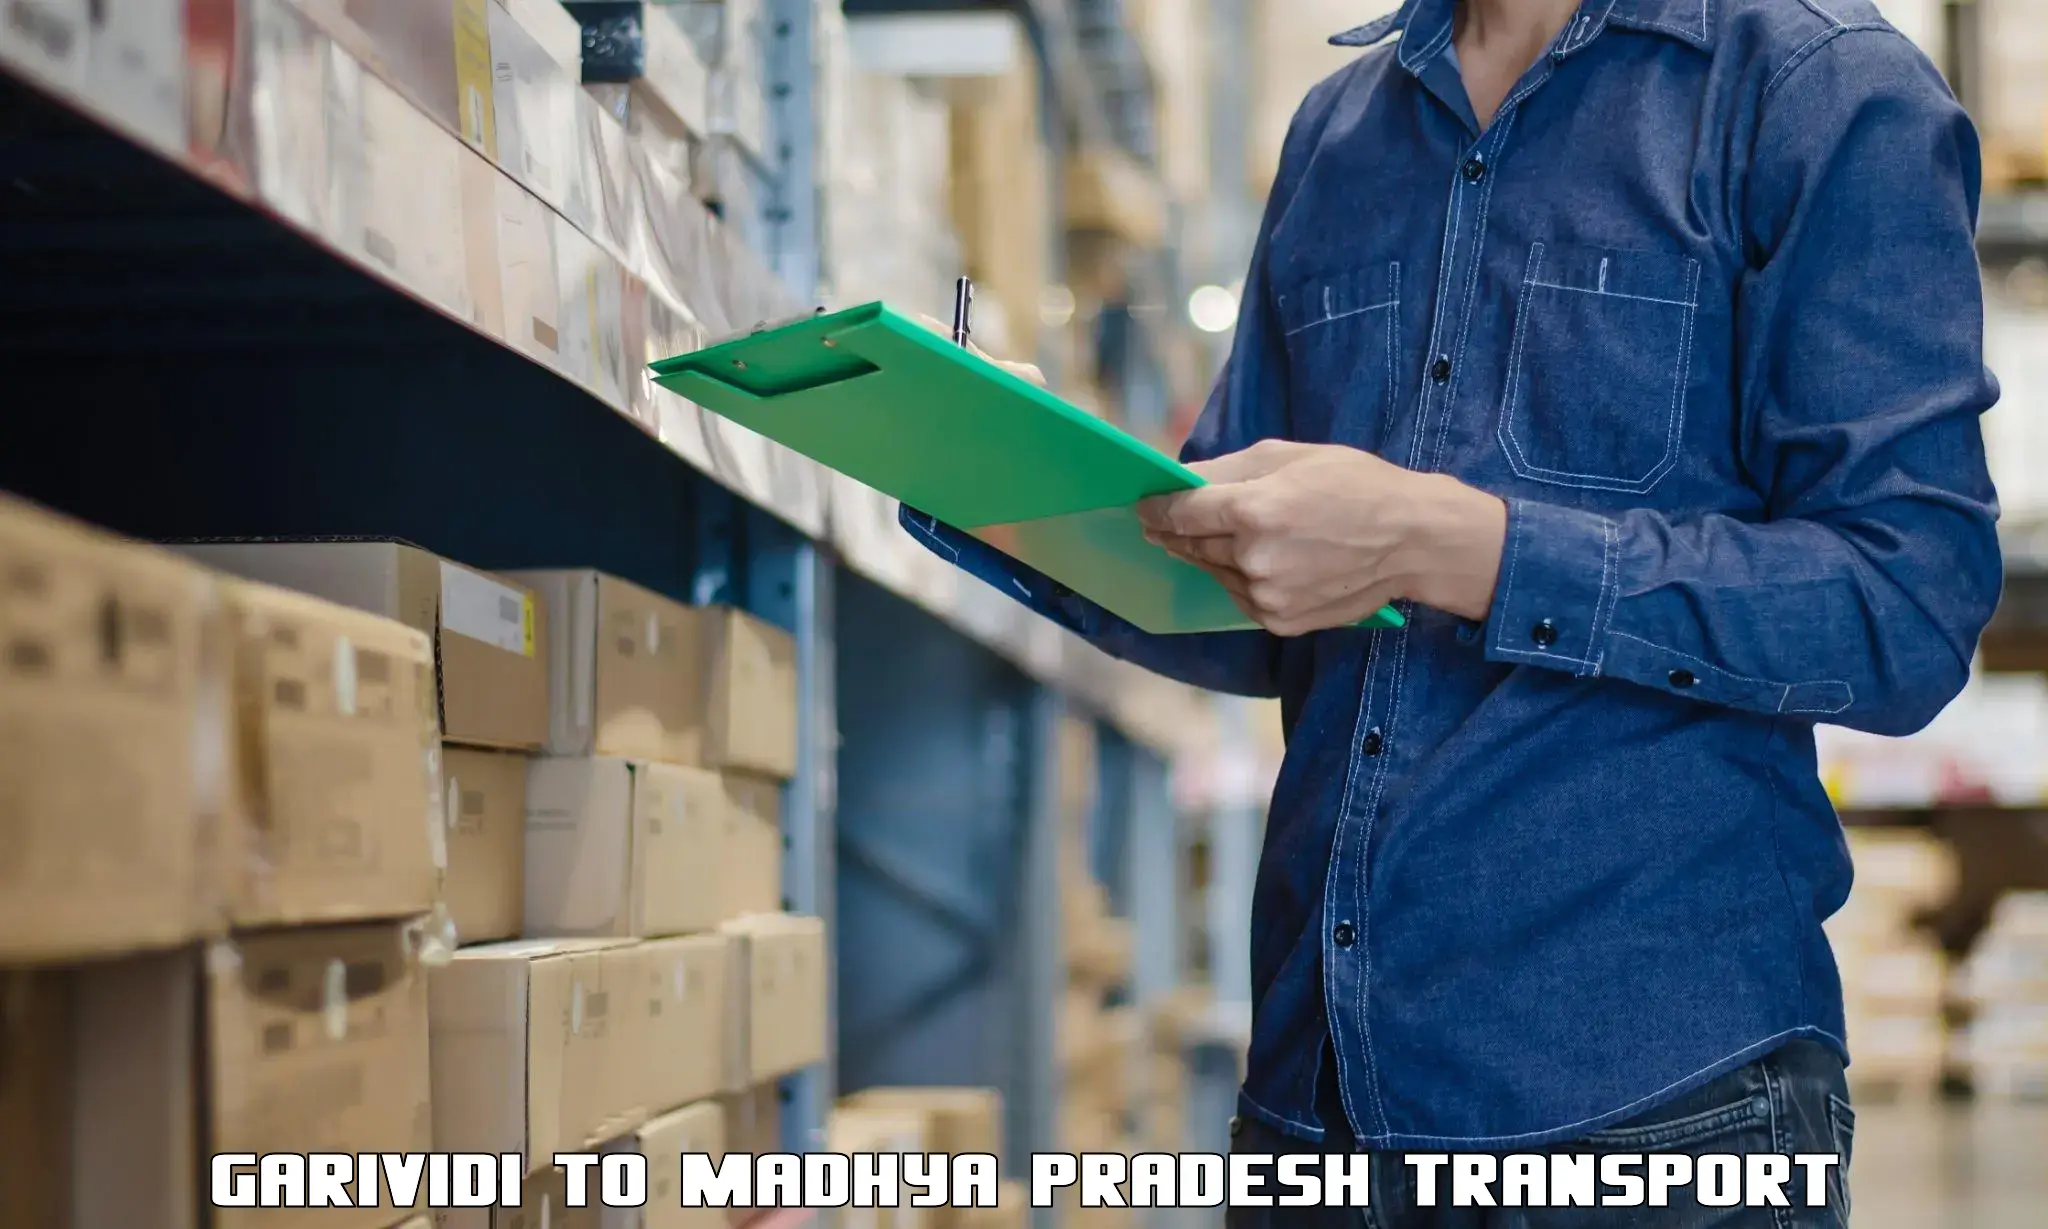 Cargo transport services Garividi to Ratlam